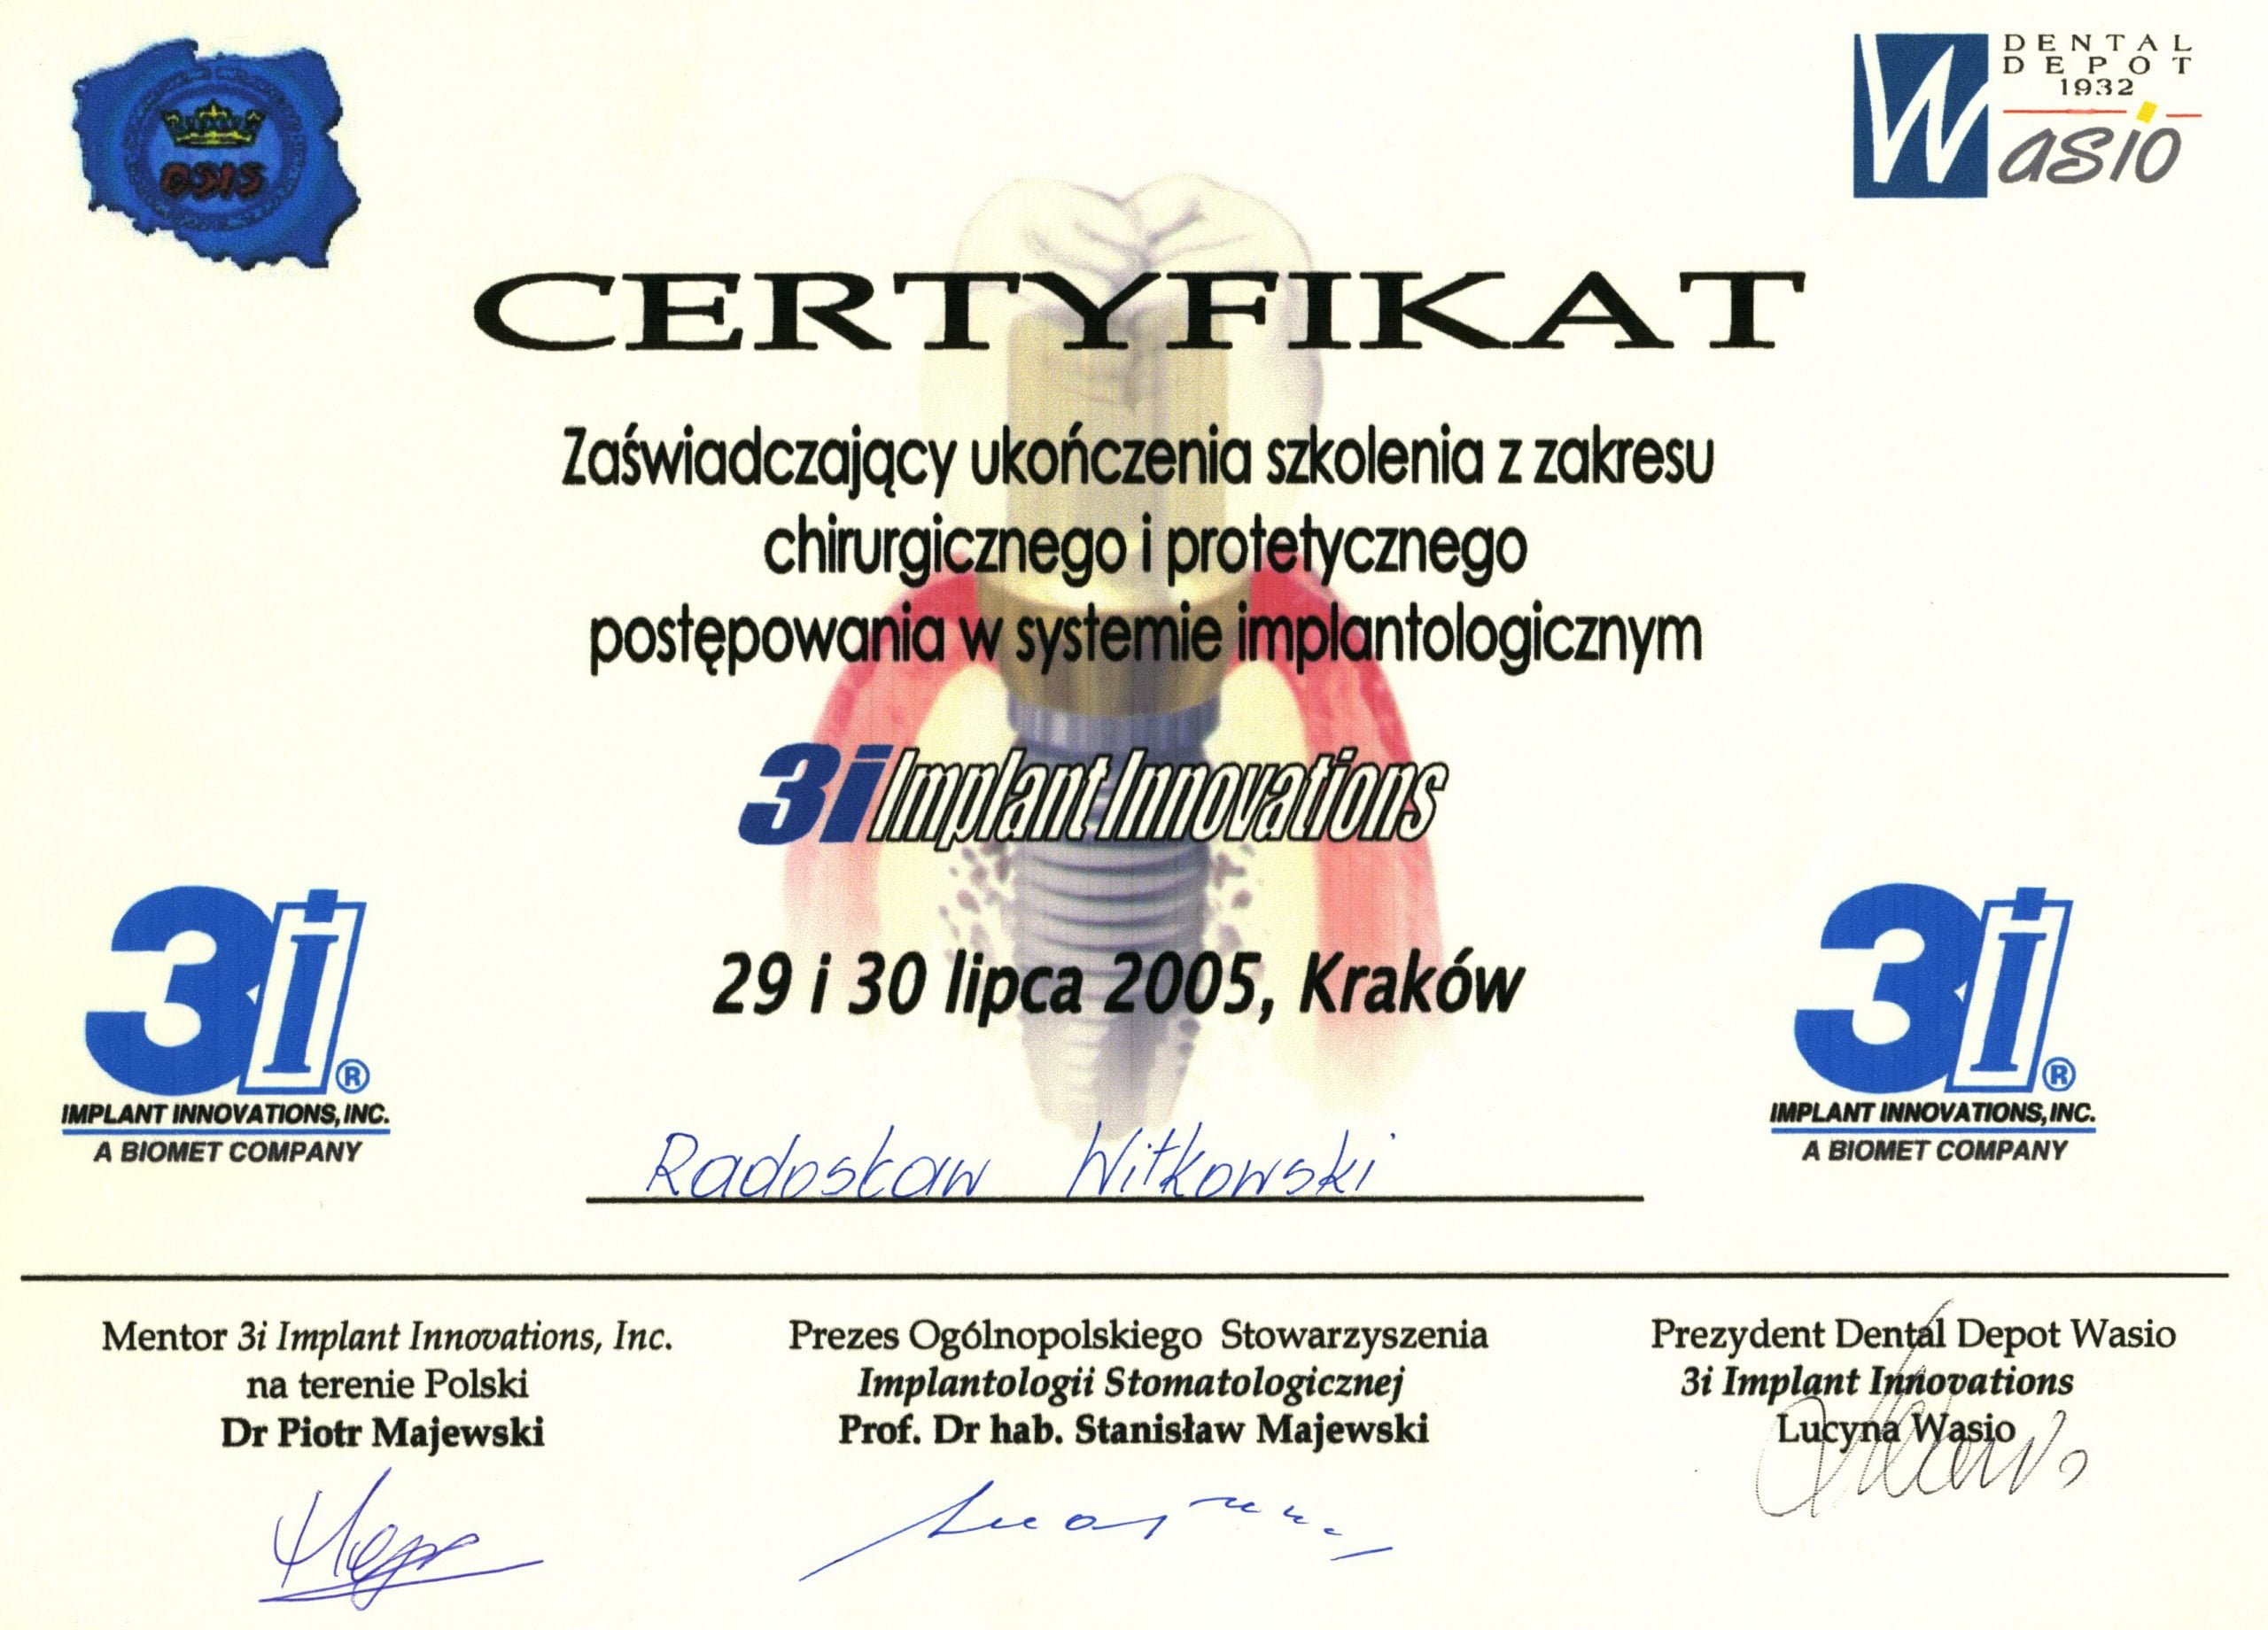 Radosław Witkowski certyfikat 44